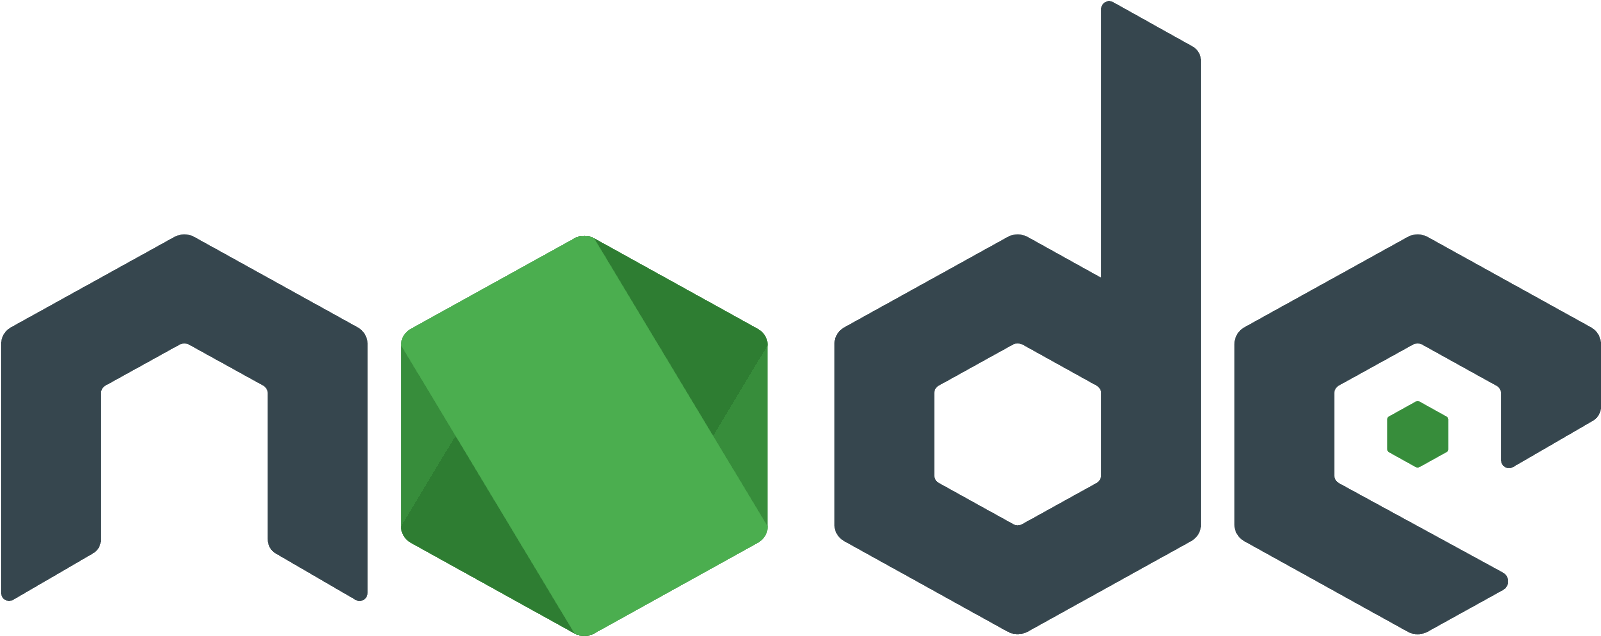 nodeJS logo